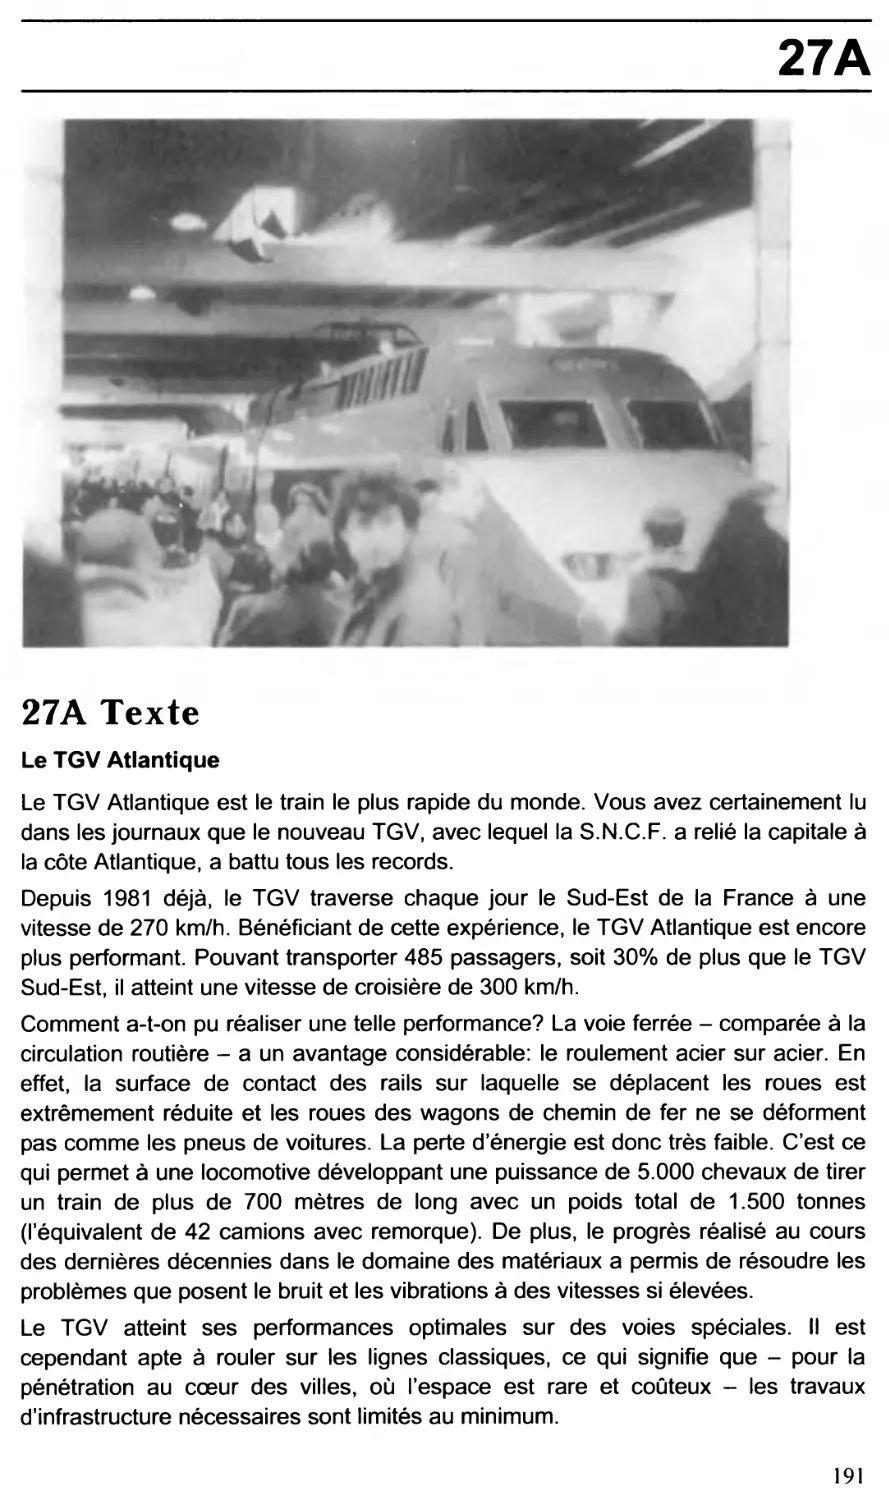 27: Le TGV Atlantique